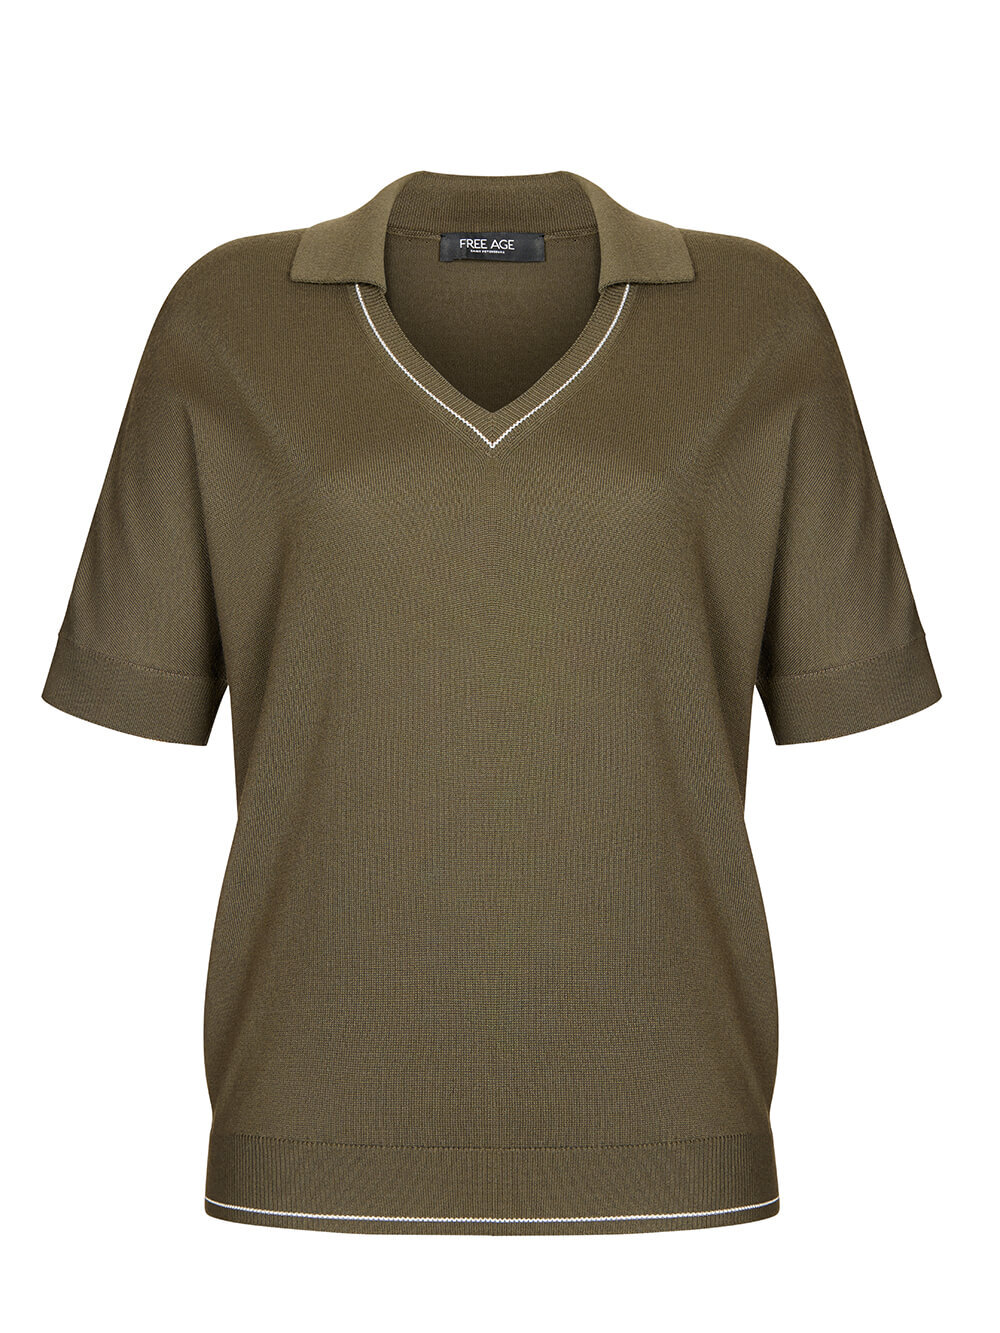 Женская футболка цвета хаки из шелка и вискозы